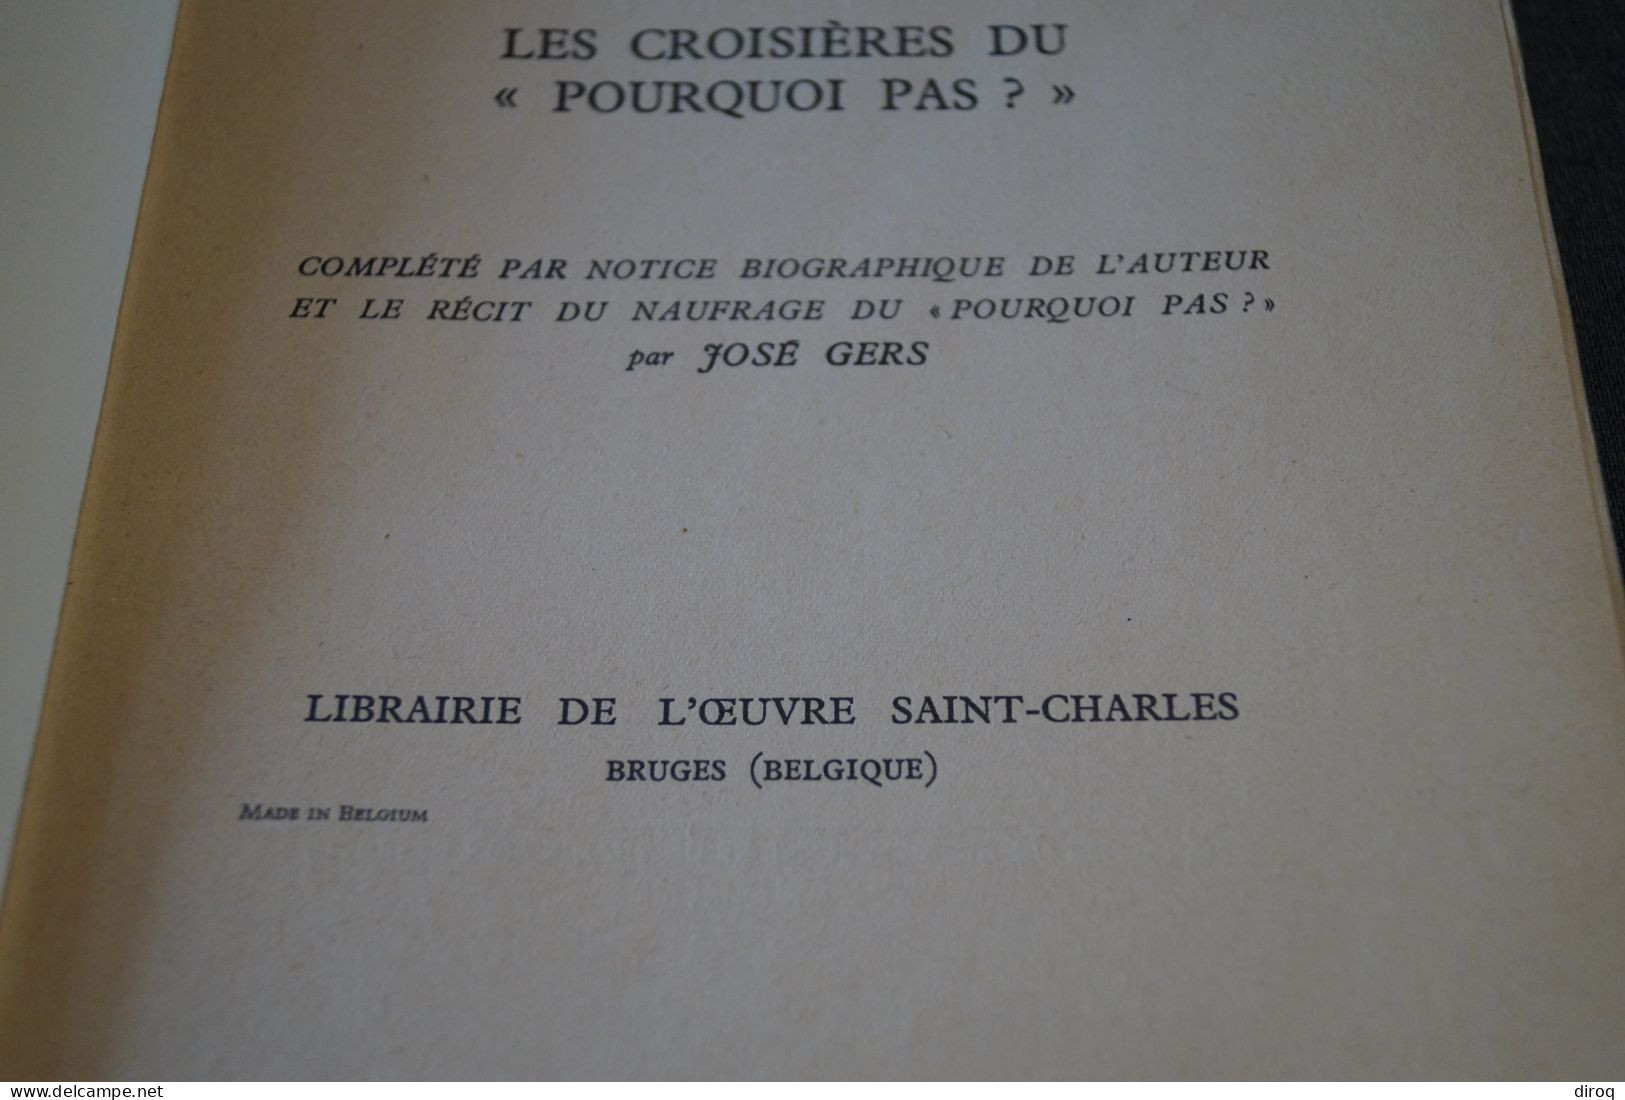 J.B. Charcot,1937,Dans La Mer Du Groenland,205 Pages + Table,26 Cm./17 Cm. Très Bel état - Historische Documenten